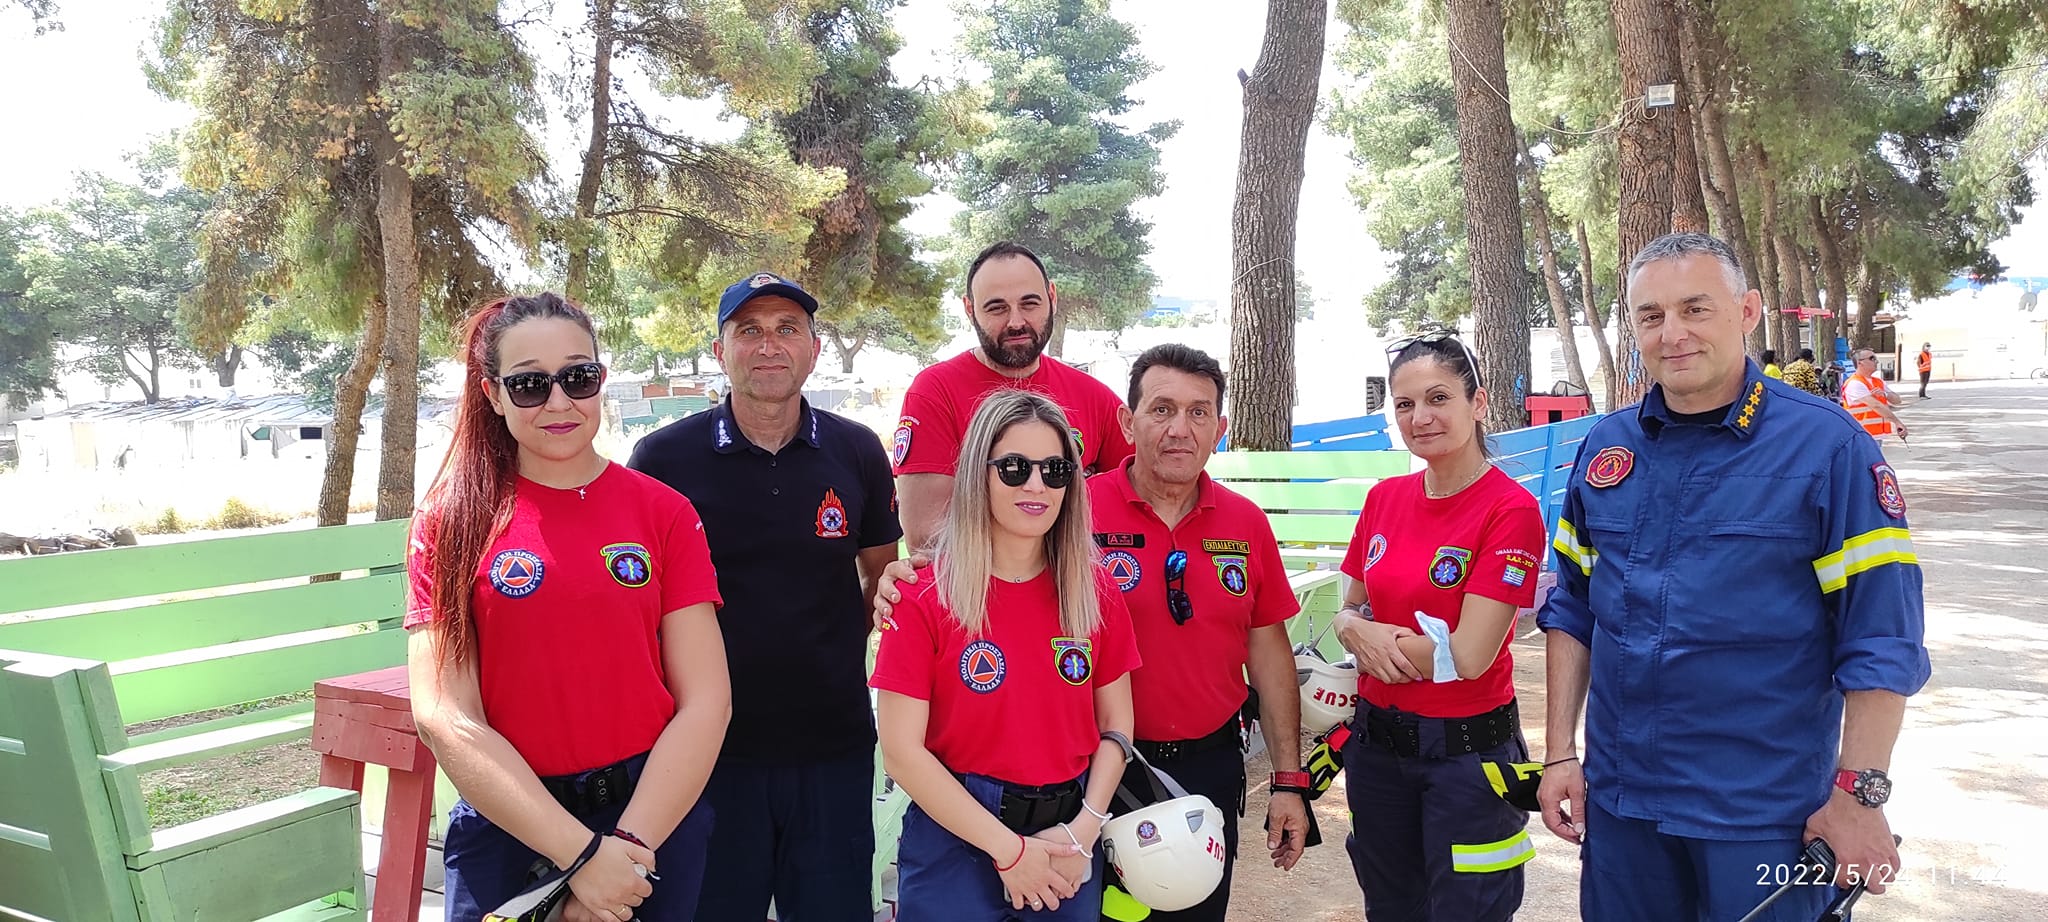 Σε άσκηση ετοιμότητας στη Ριτσώνα συμμετείχε η Ομάδα Διάσωσης Εύβοιας (pics)